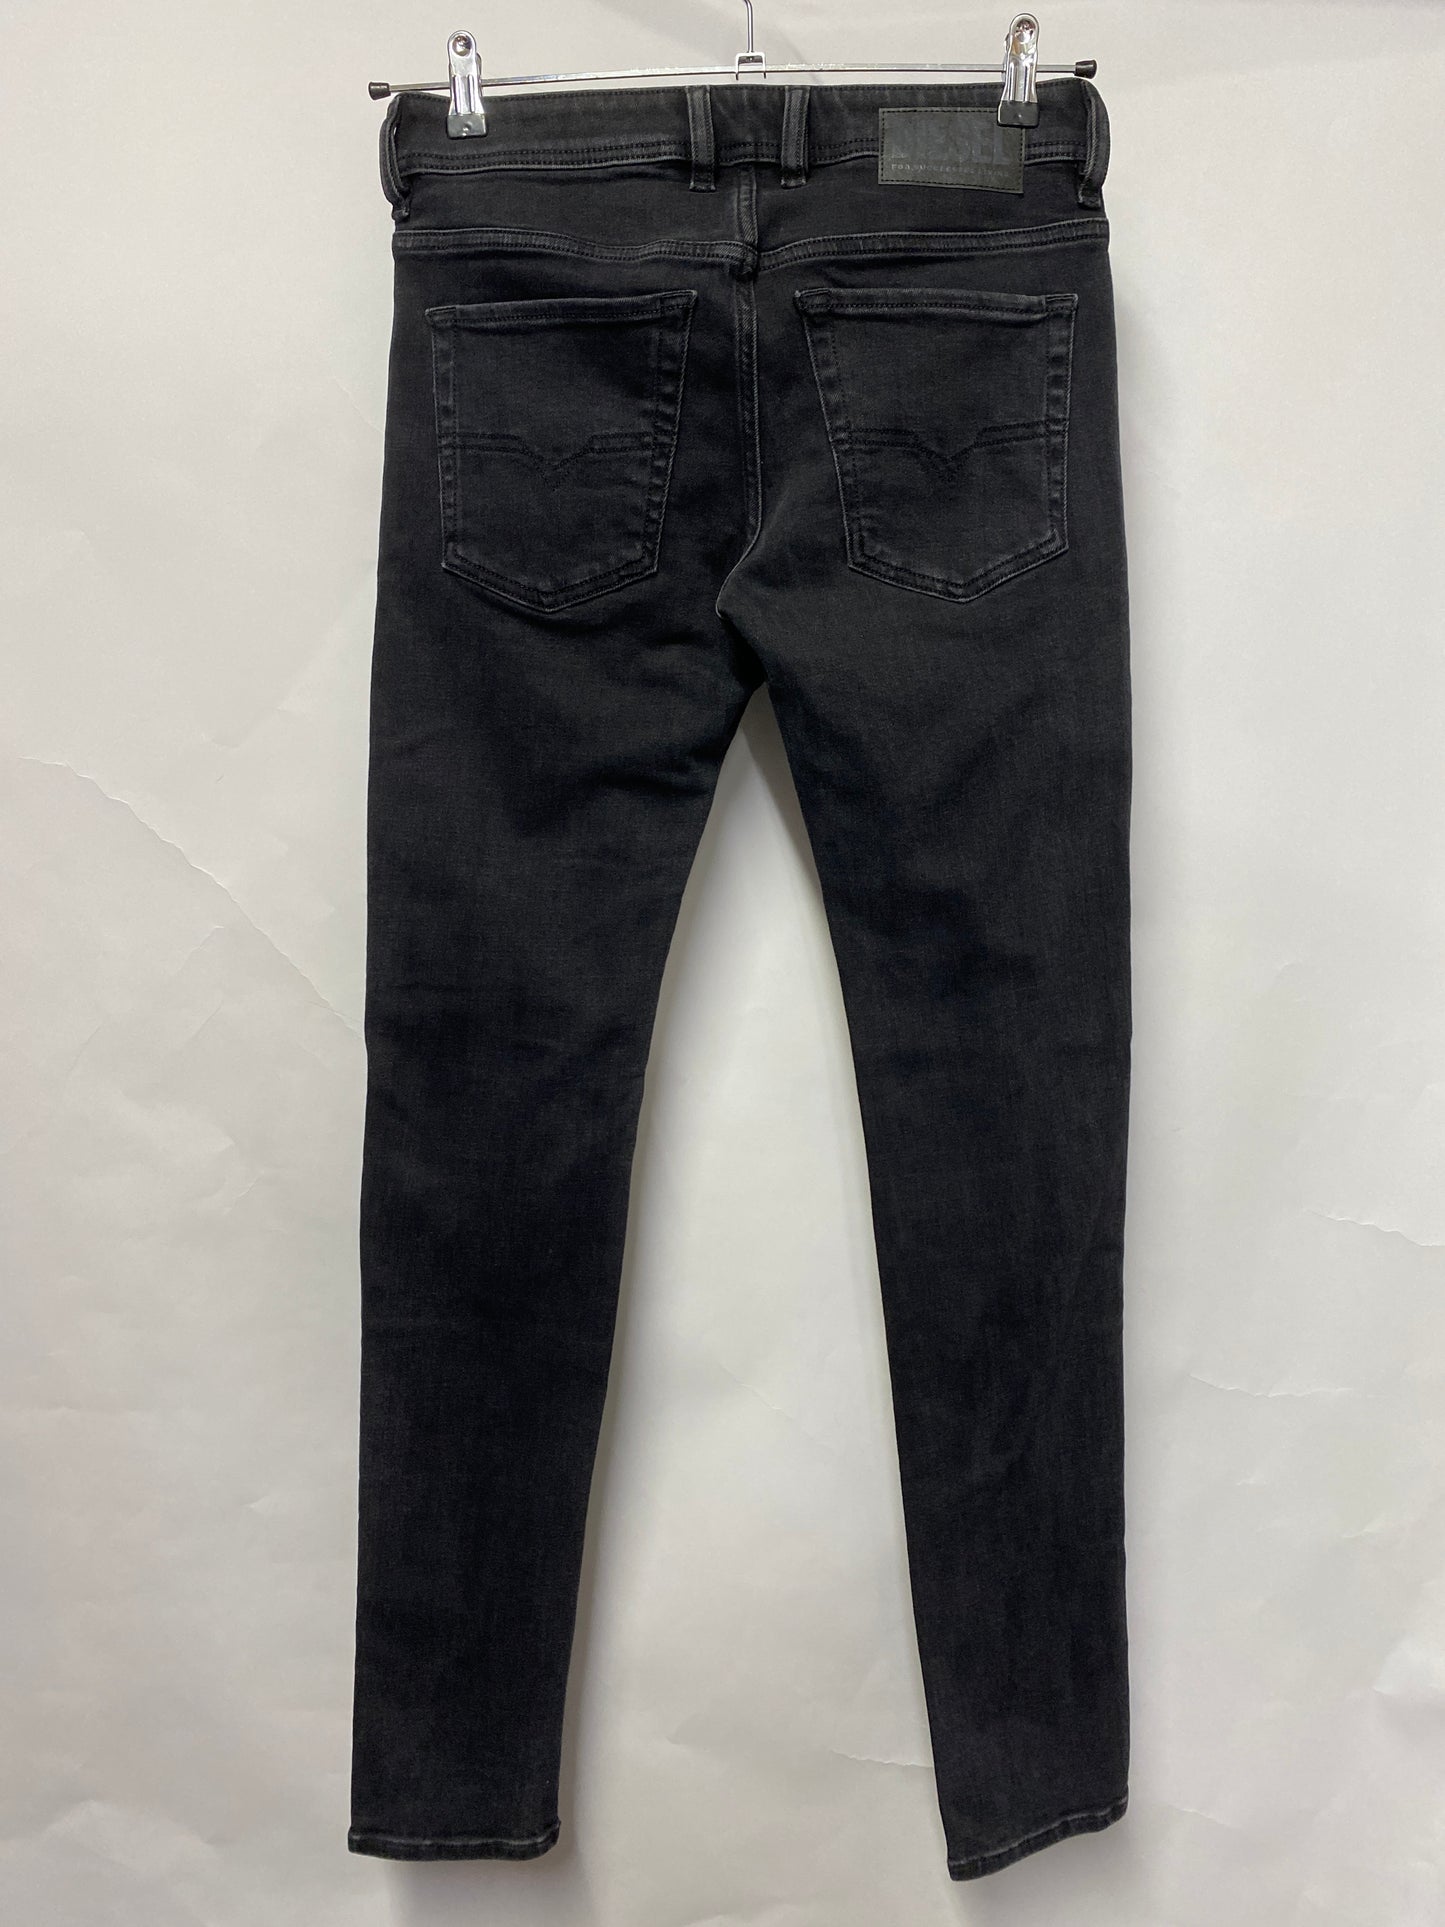 Diesel Black Denim Sleenker-x Slim-Skinny Jeans 28 x 32 BNWT